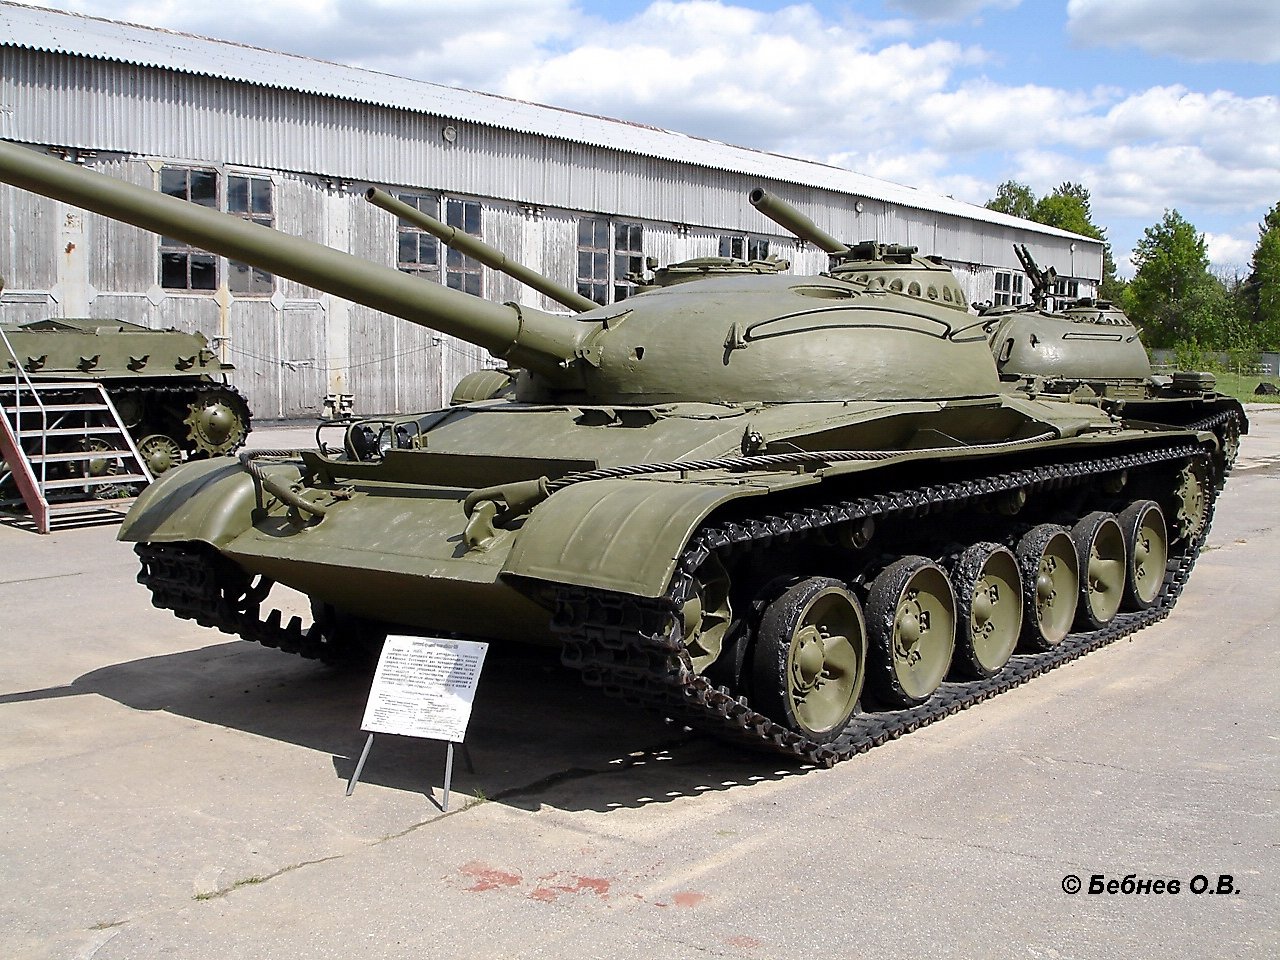 Object 16. Танк об 140. Танк объект 140. Объект 140 в Кубинке. Объект 140 — Советский опытный средний танк.